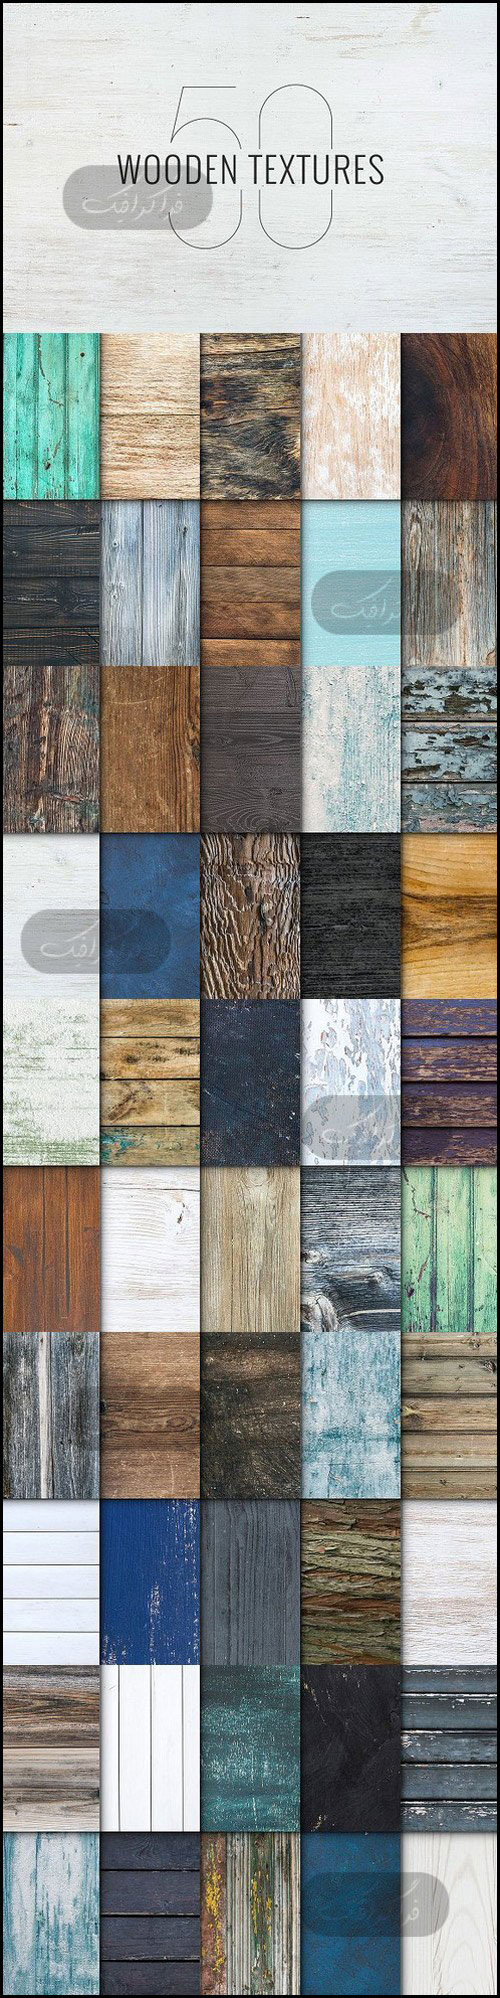 دانلود تکسچر های چوب Wood Textures - شماره 15